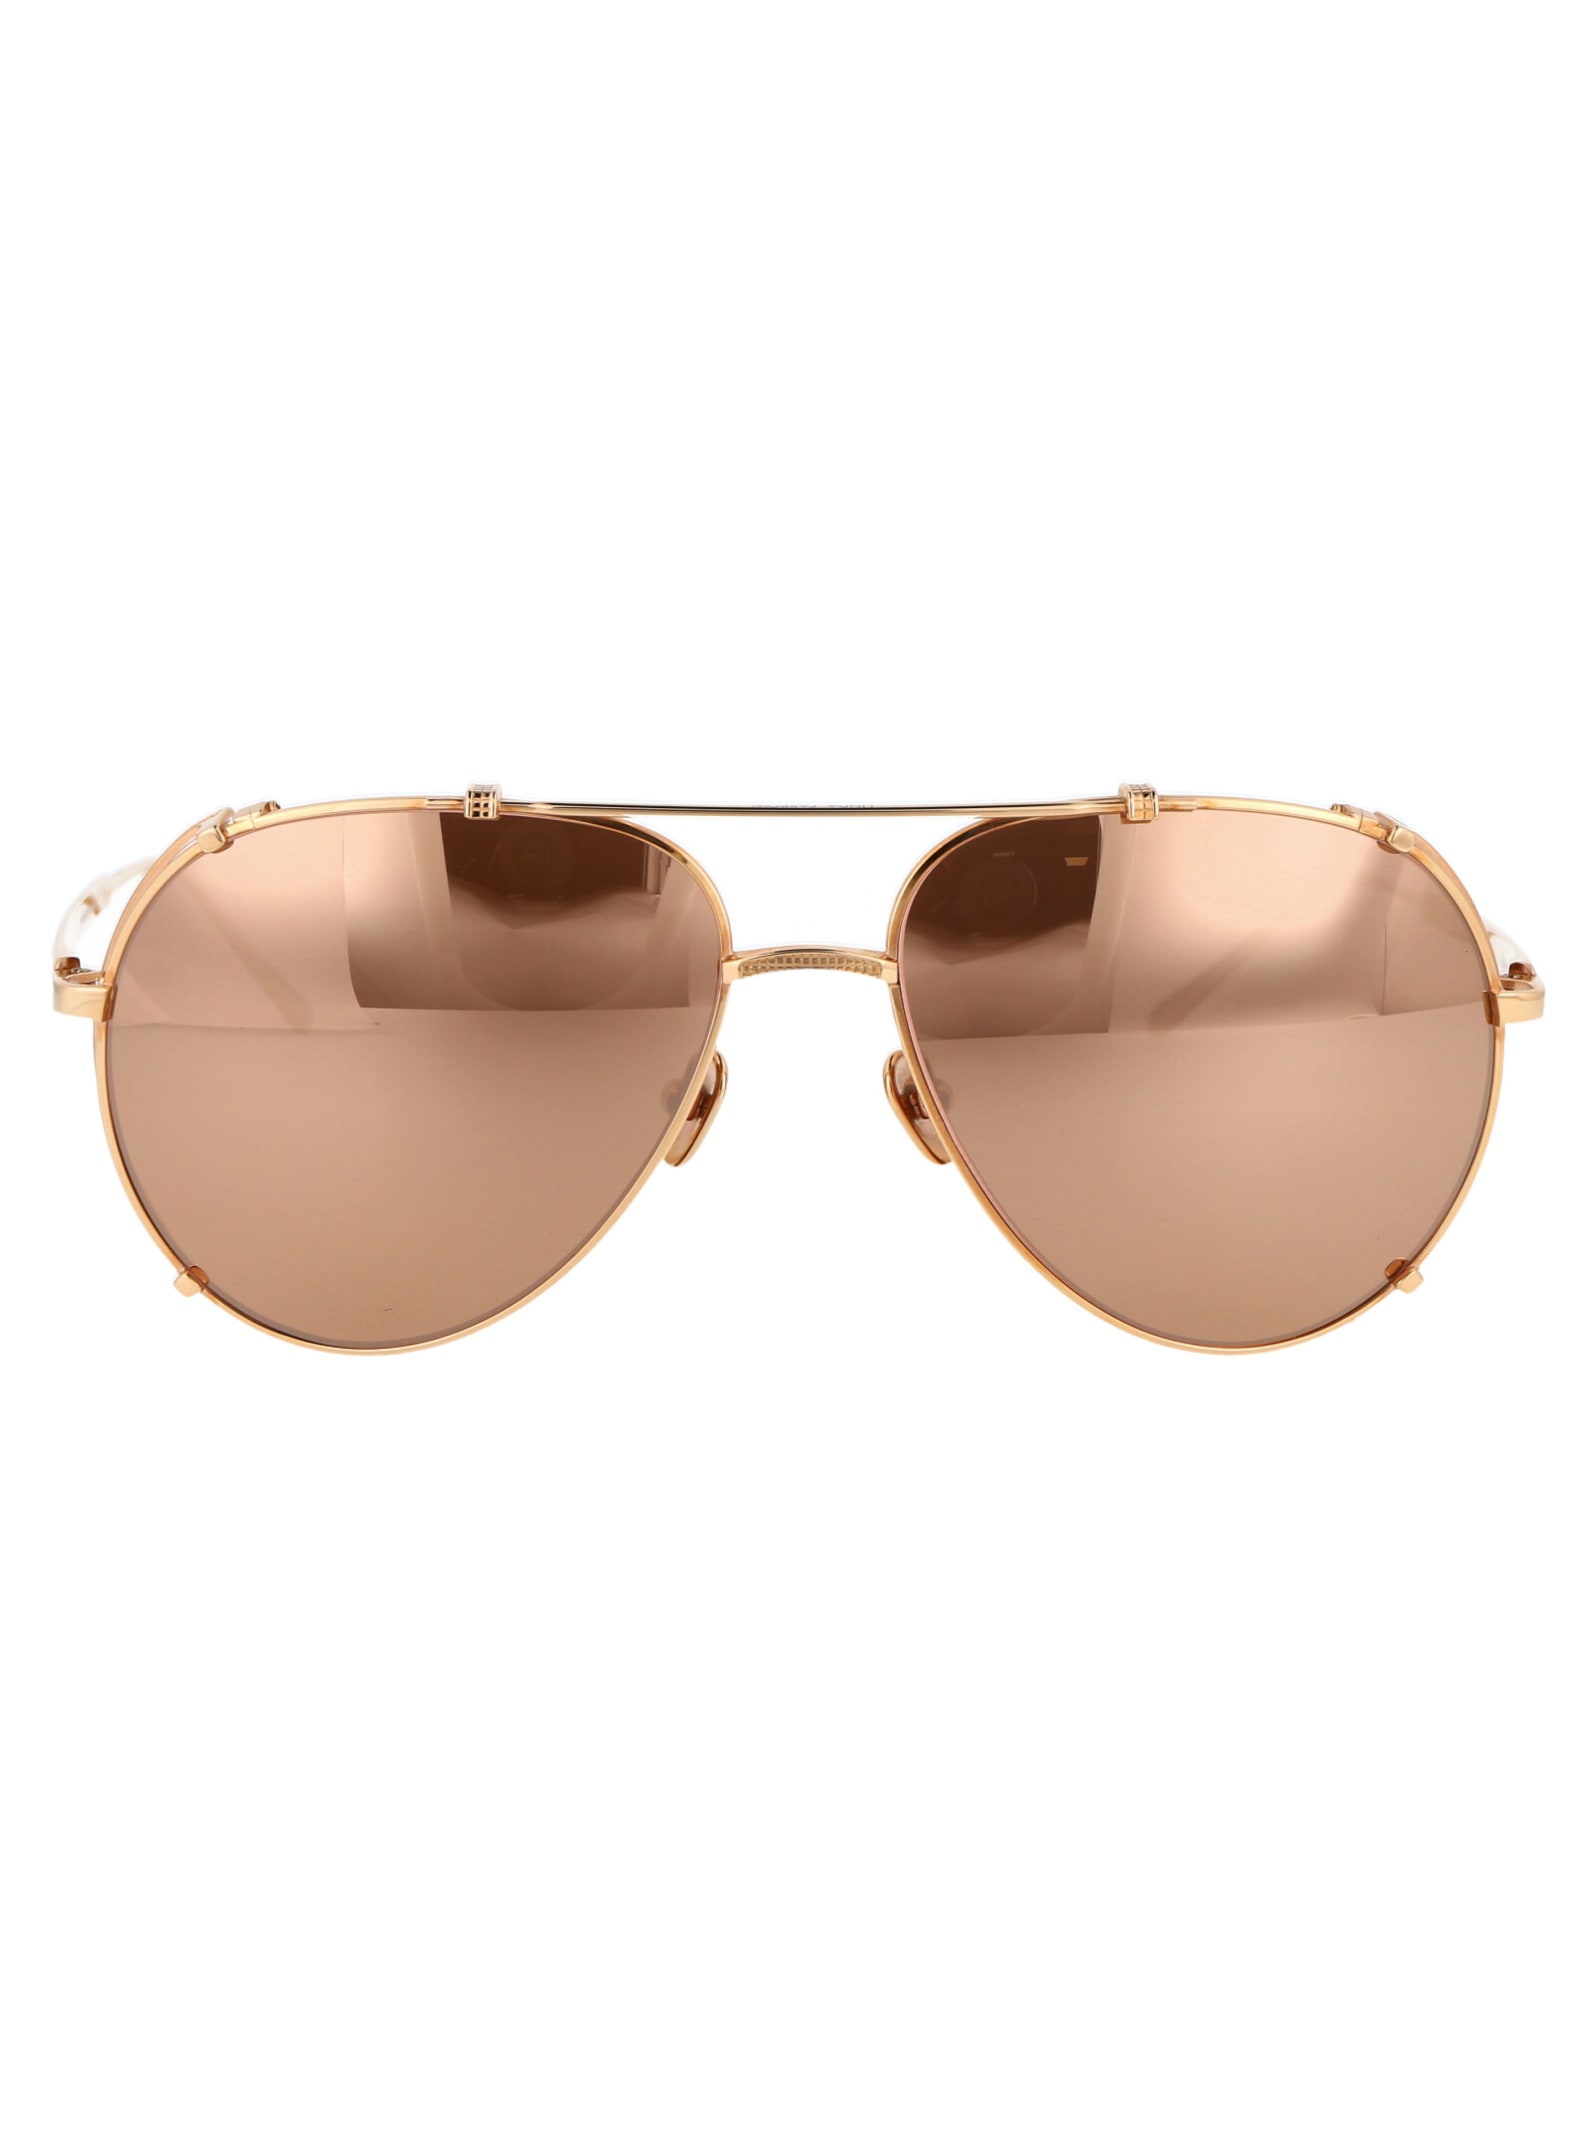 Linda Farrow Newman Sunglasses